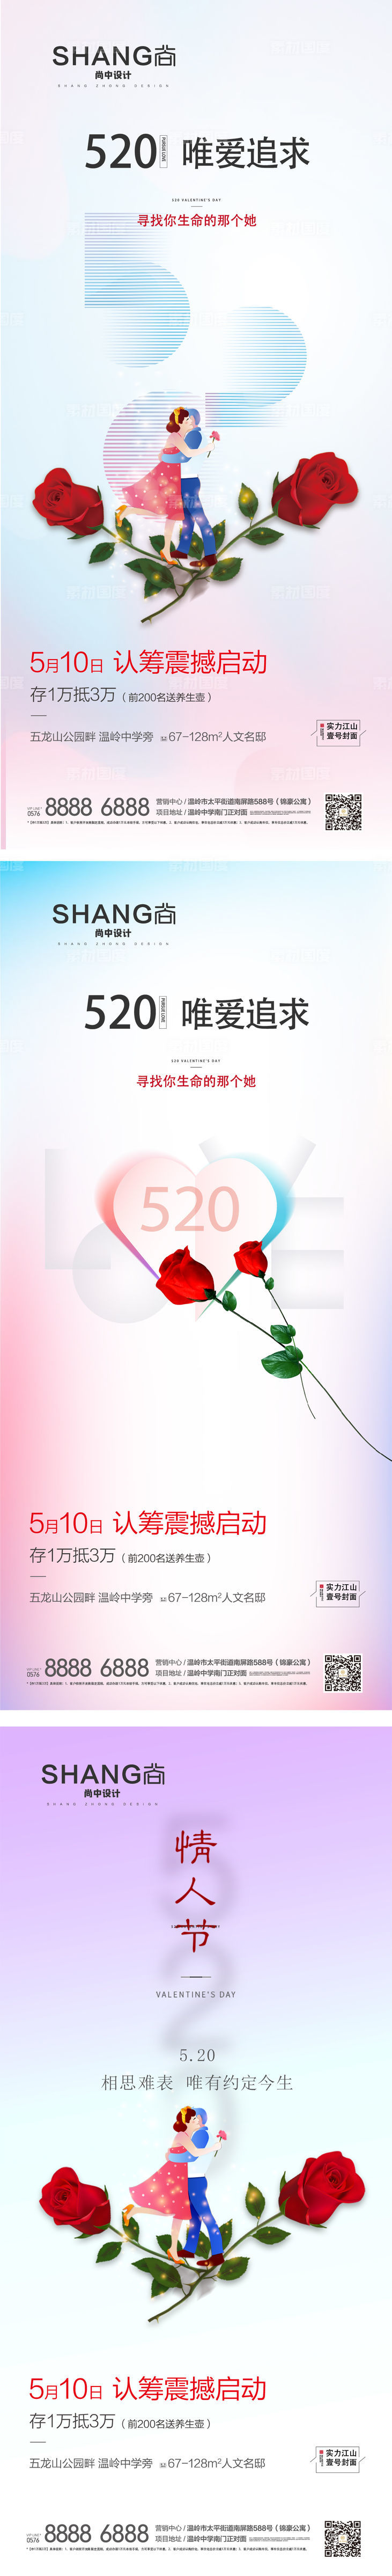 520情人节微信系列高端大气海报